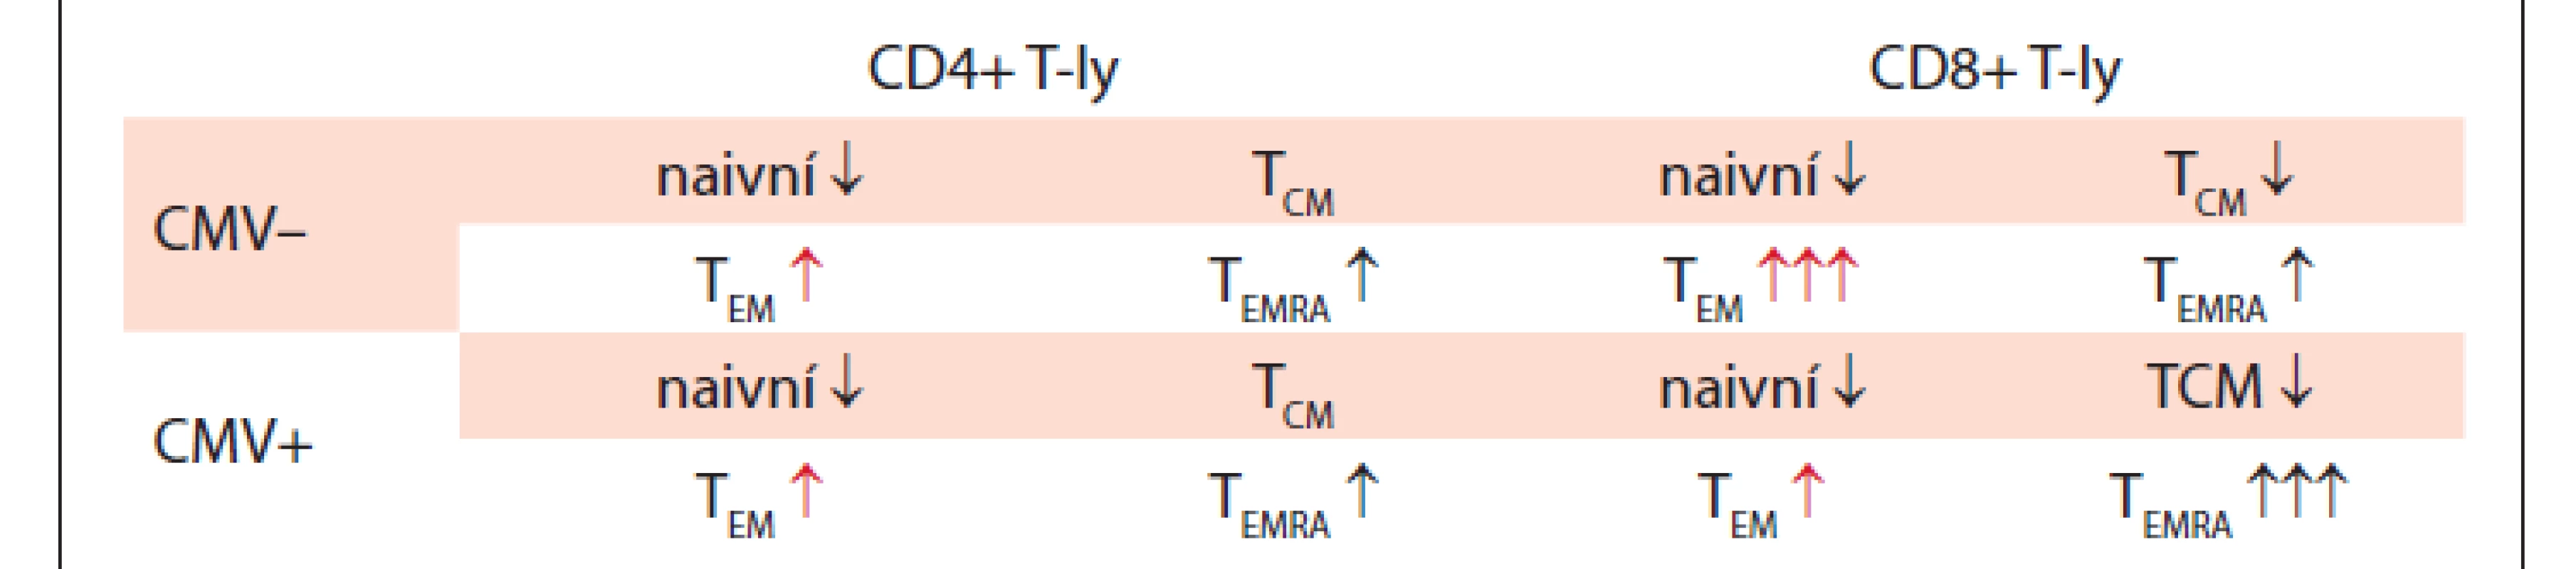 Změny v zastoupení T-ly subpopulací a exprese PD-1 u CLL
v závislosti na CMV séropozitivitě.